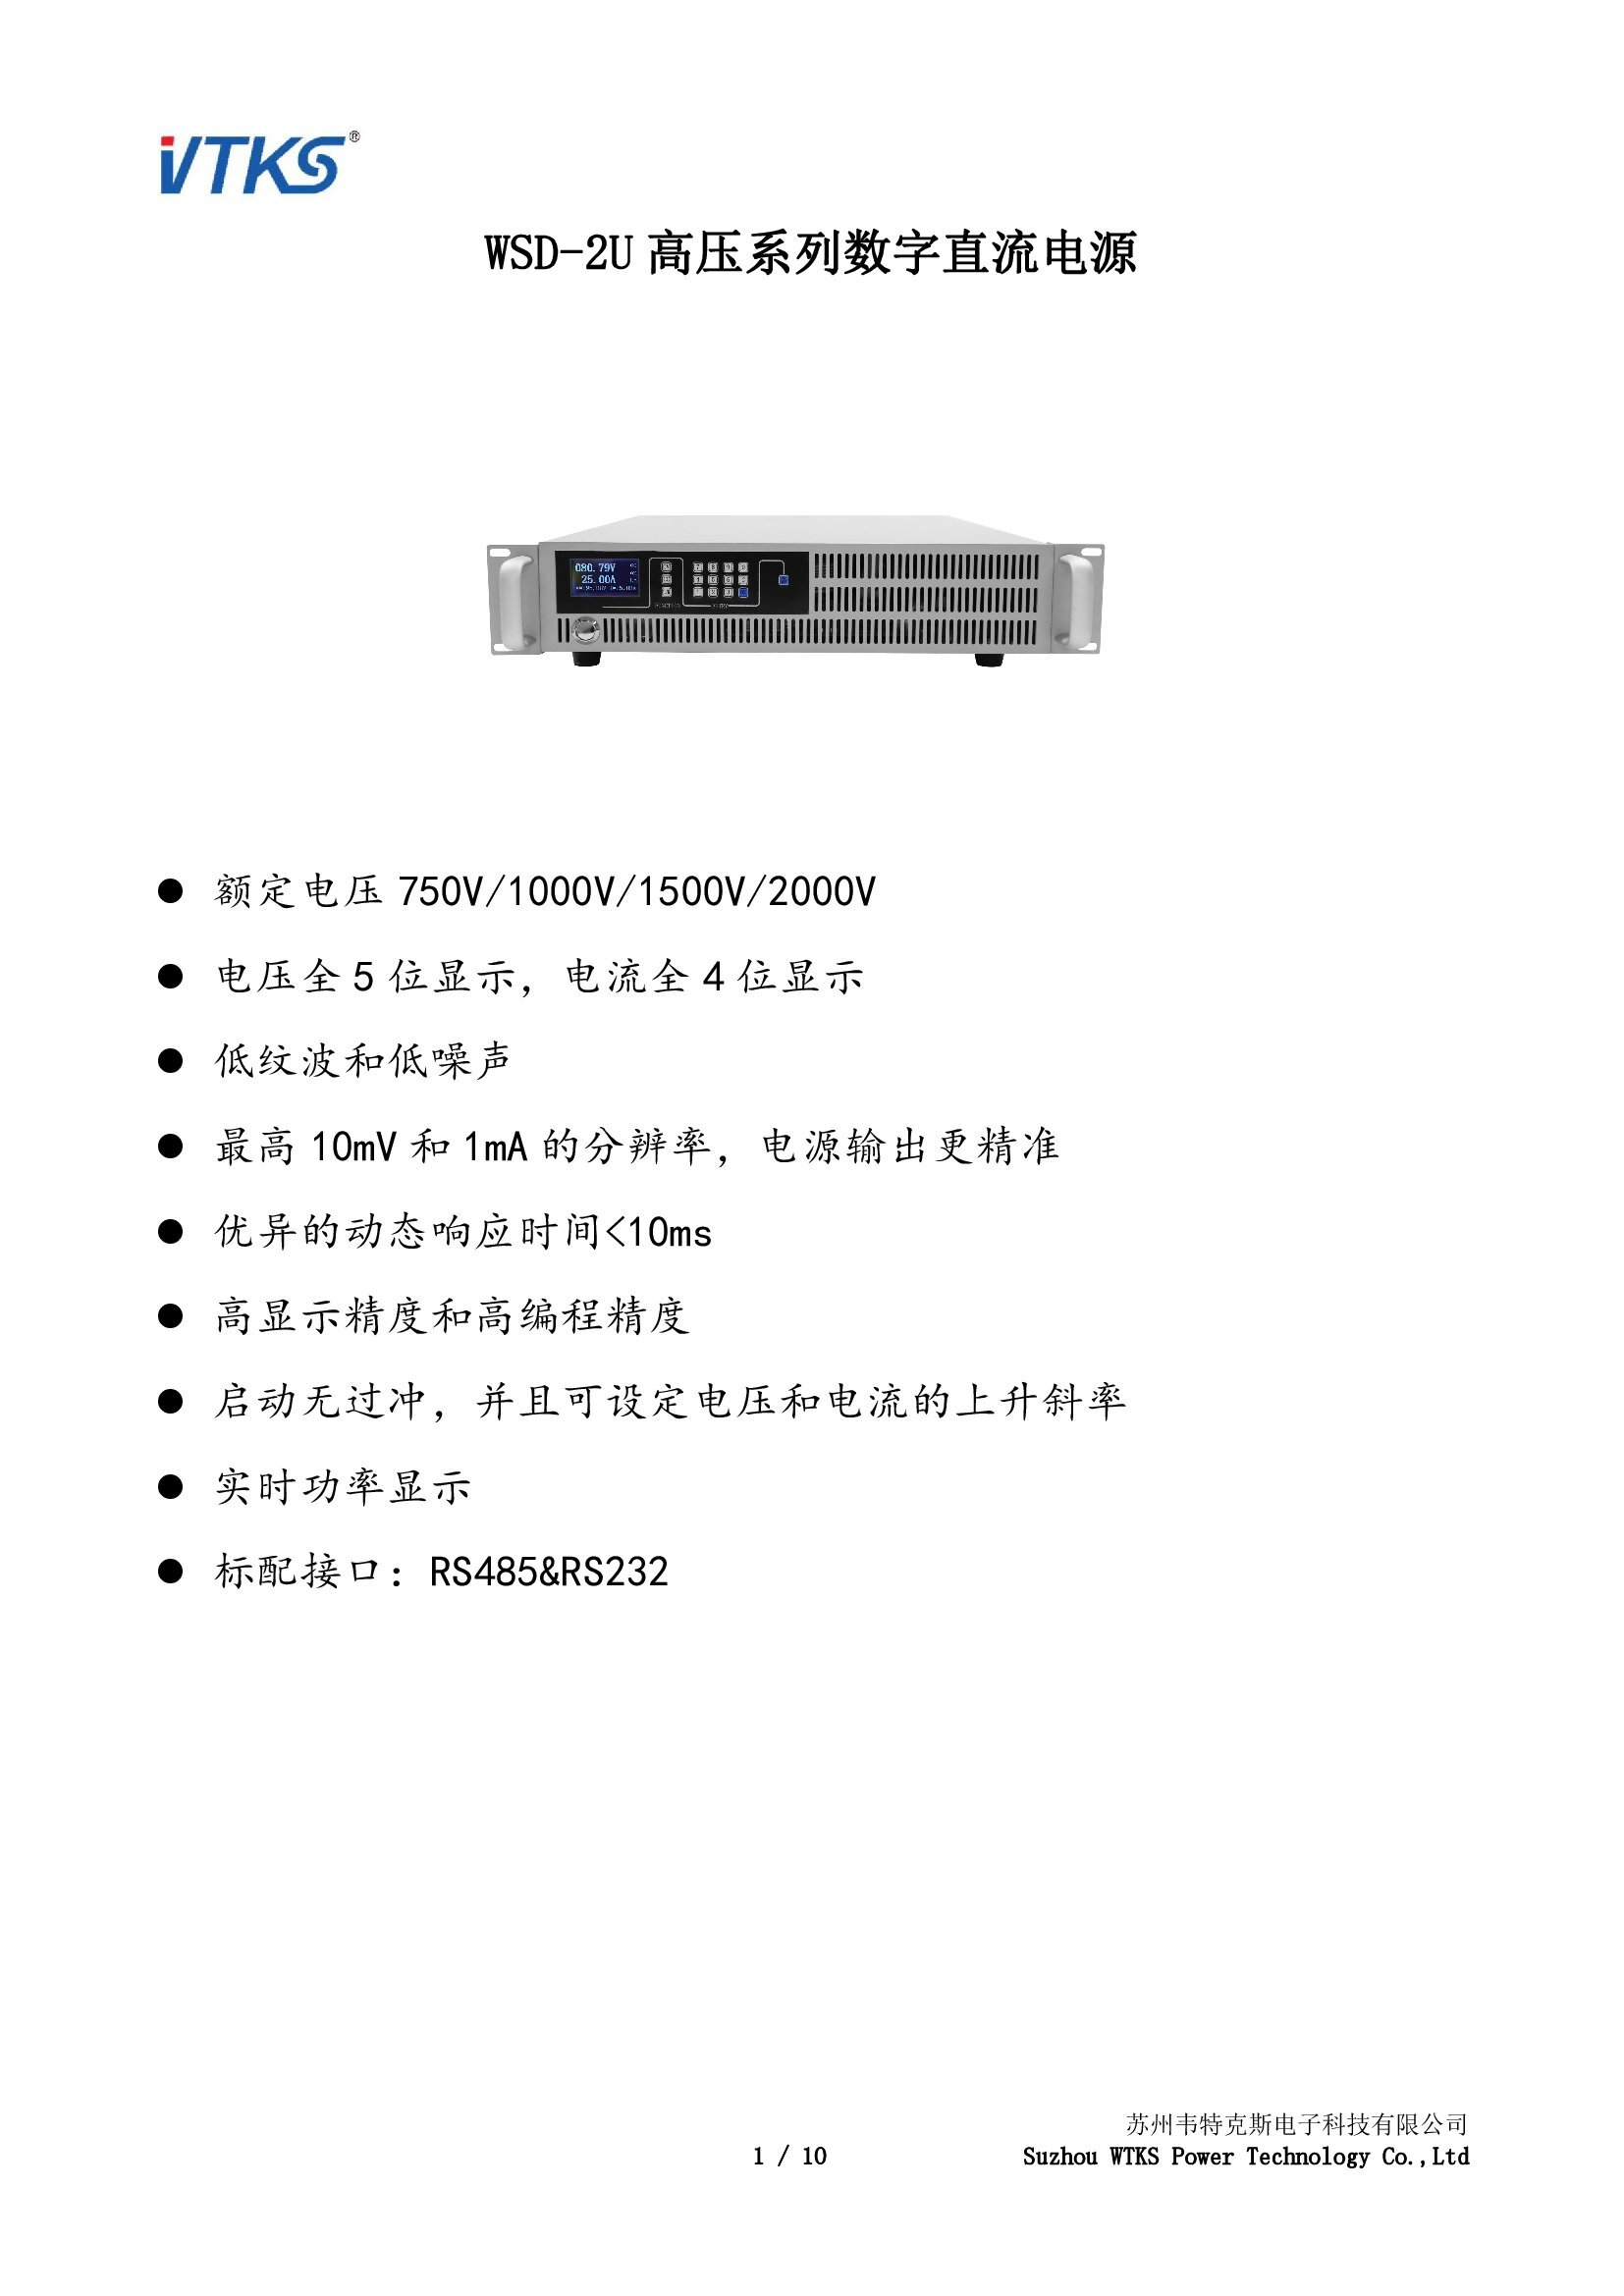 WSD-2U高压系列数字直流电源技术资料_V1.00_00001.jpg